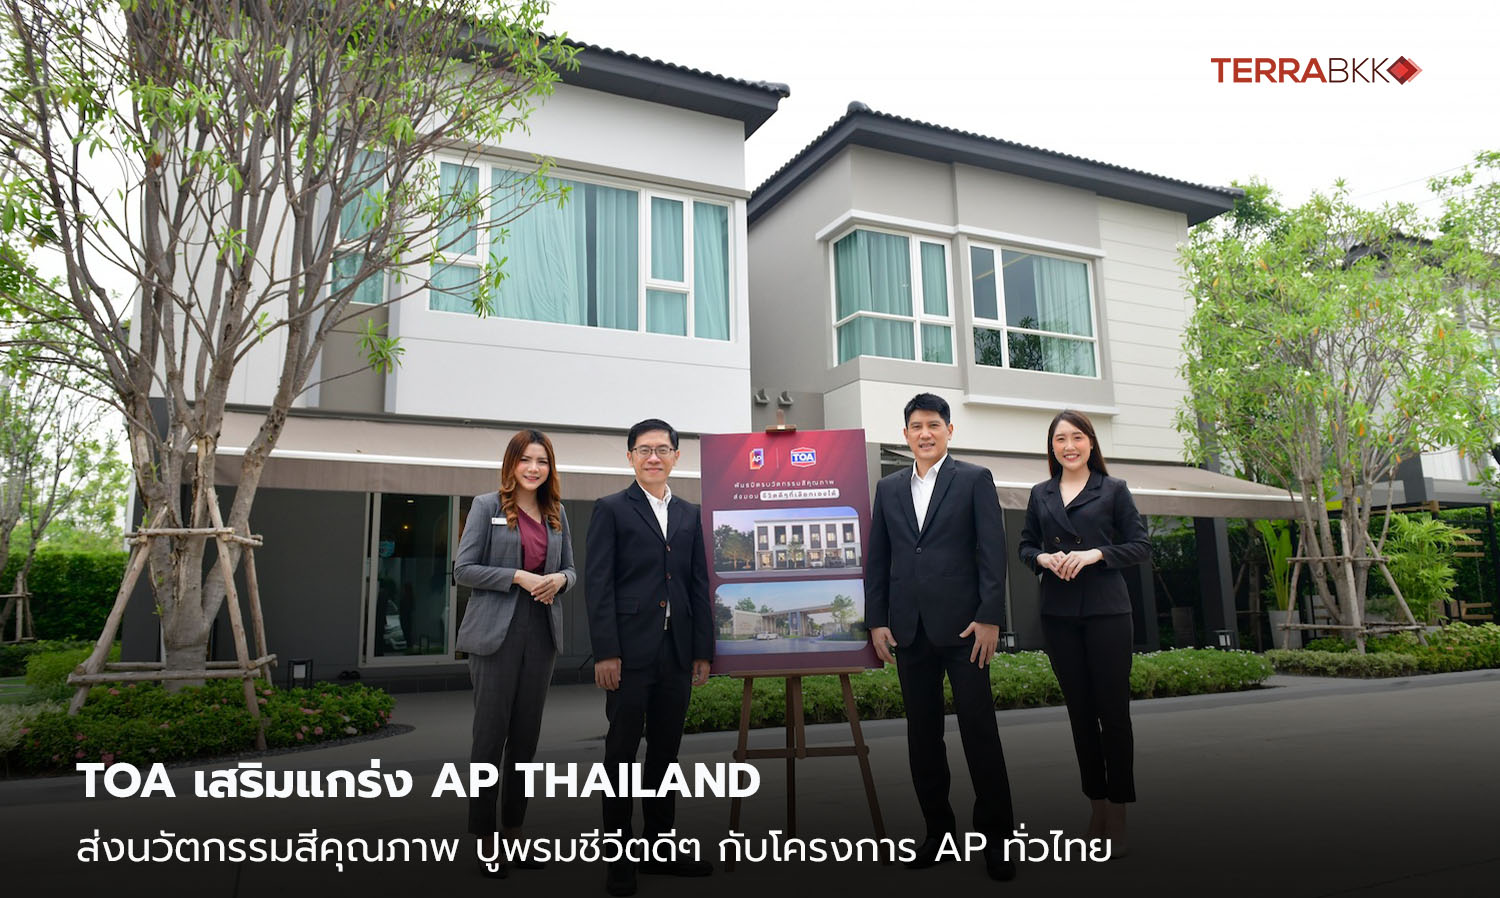 toa-เสริมแกร่ง-ap-thailand-ส่งนวัตกรรมสีคุณภาพ-ปูพรมชีวีตดีๆ-กับโครงการ-ap-ทั่วไทย